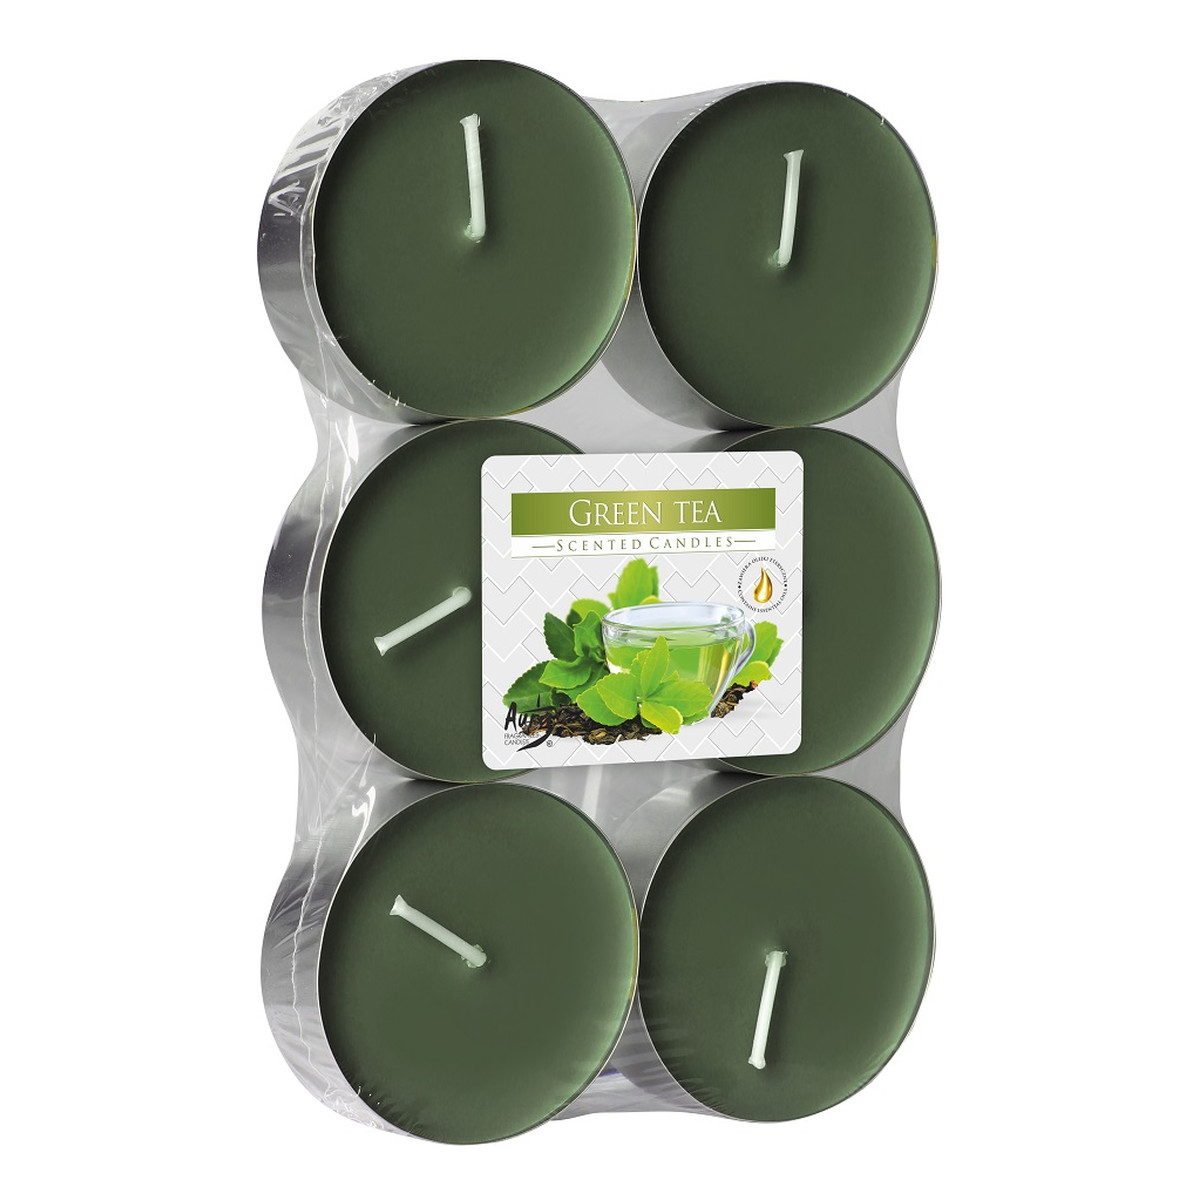 Bispol Podgrzewacze zapachowe maxi green tea 6szt.